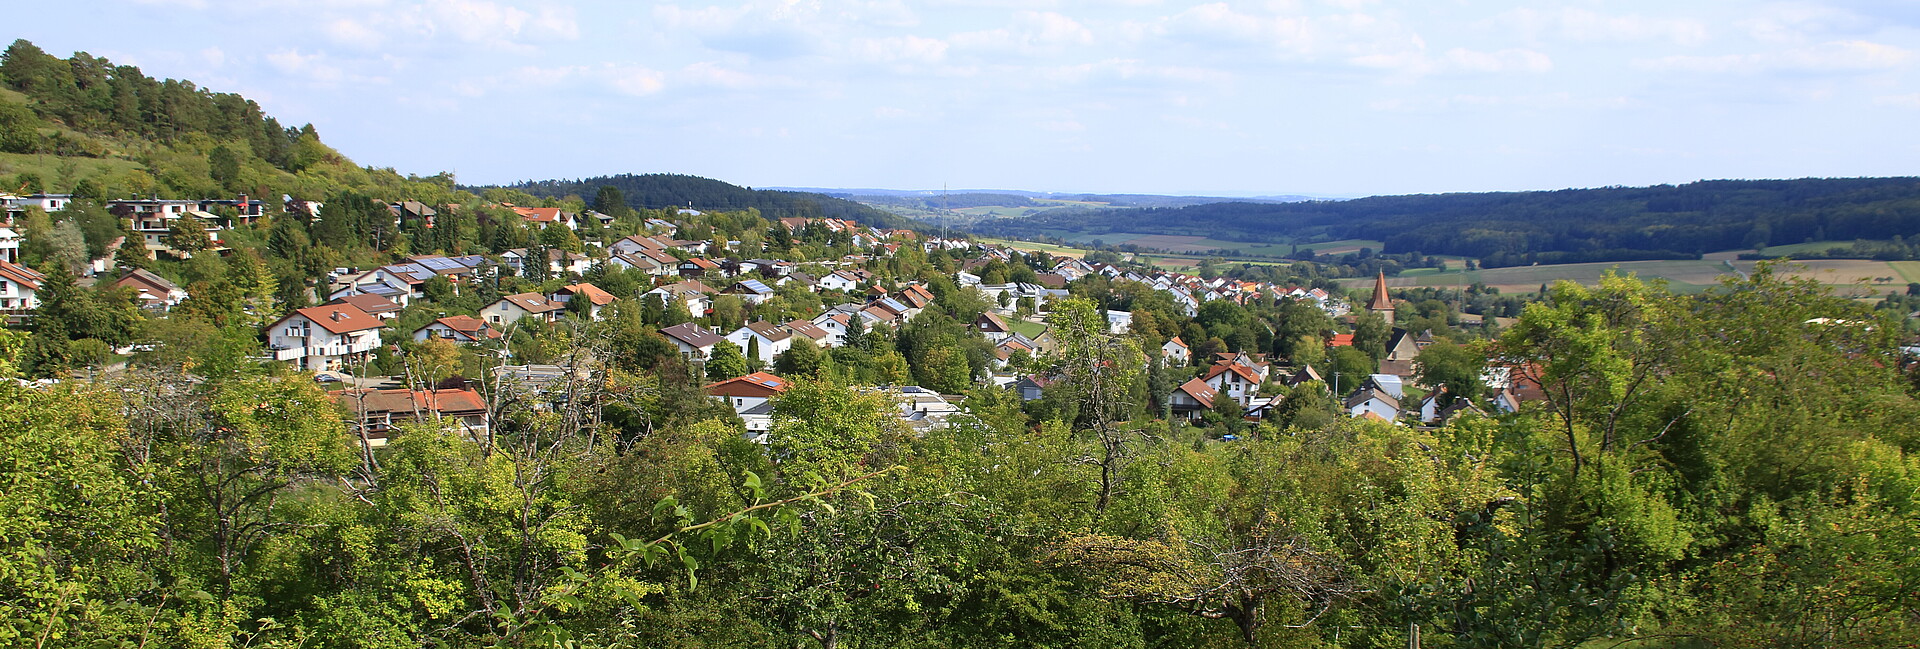 Blick auf den Ort Simmozheim bei Calw im Landkreis Calw